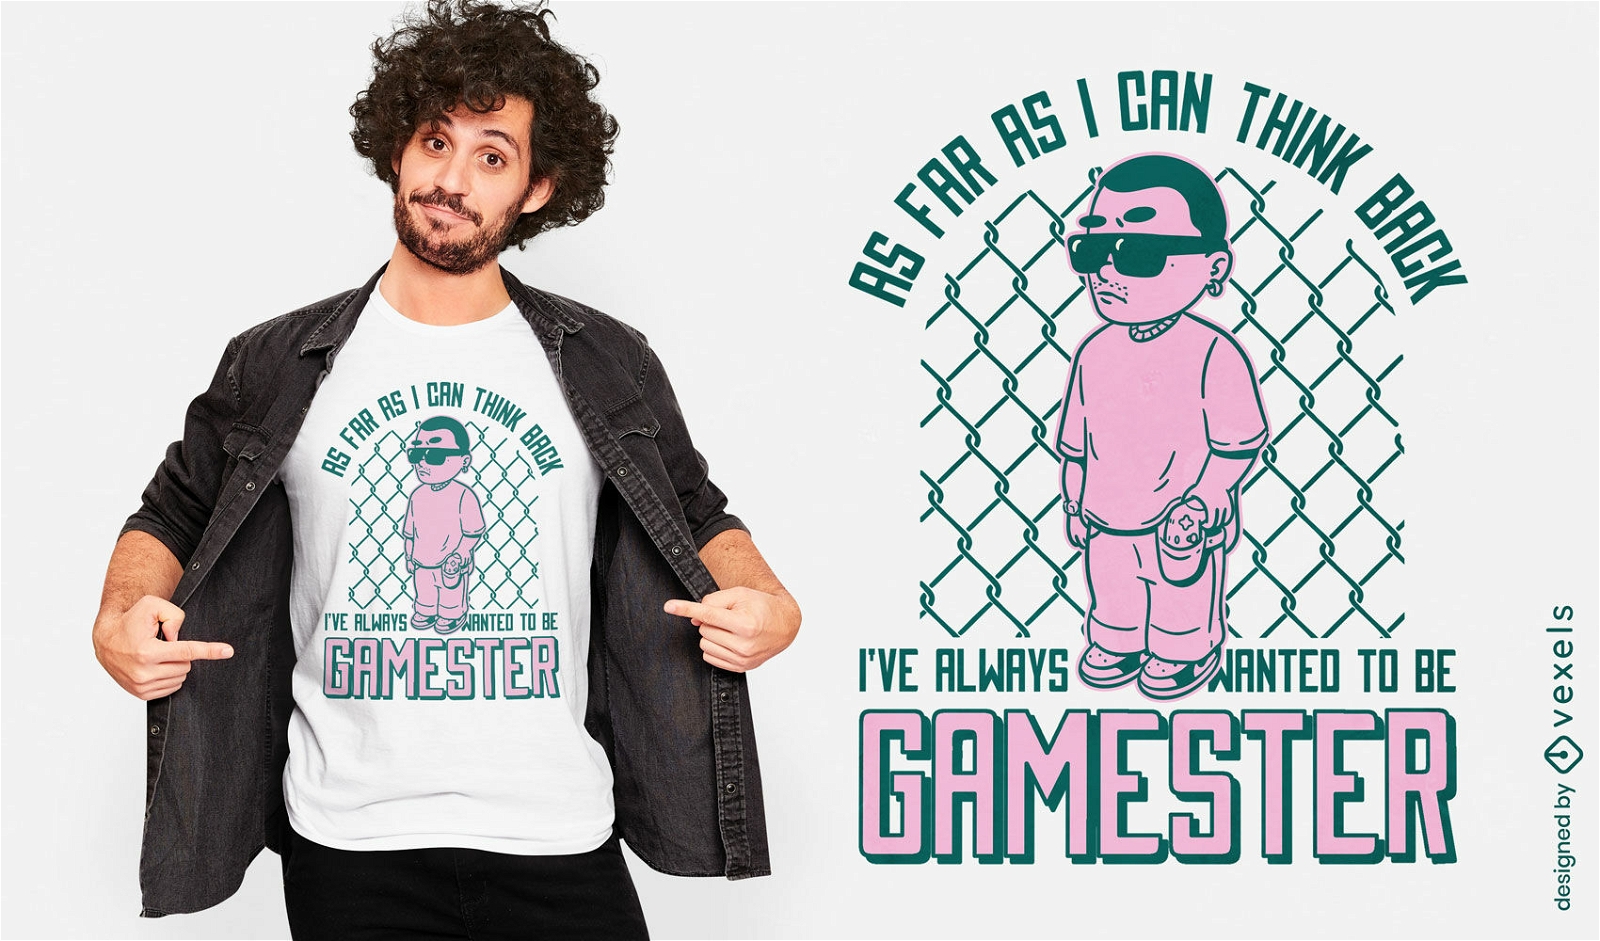 Gangster gamer with joystick t-shirt design